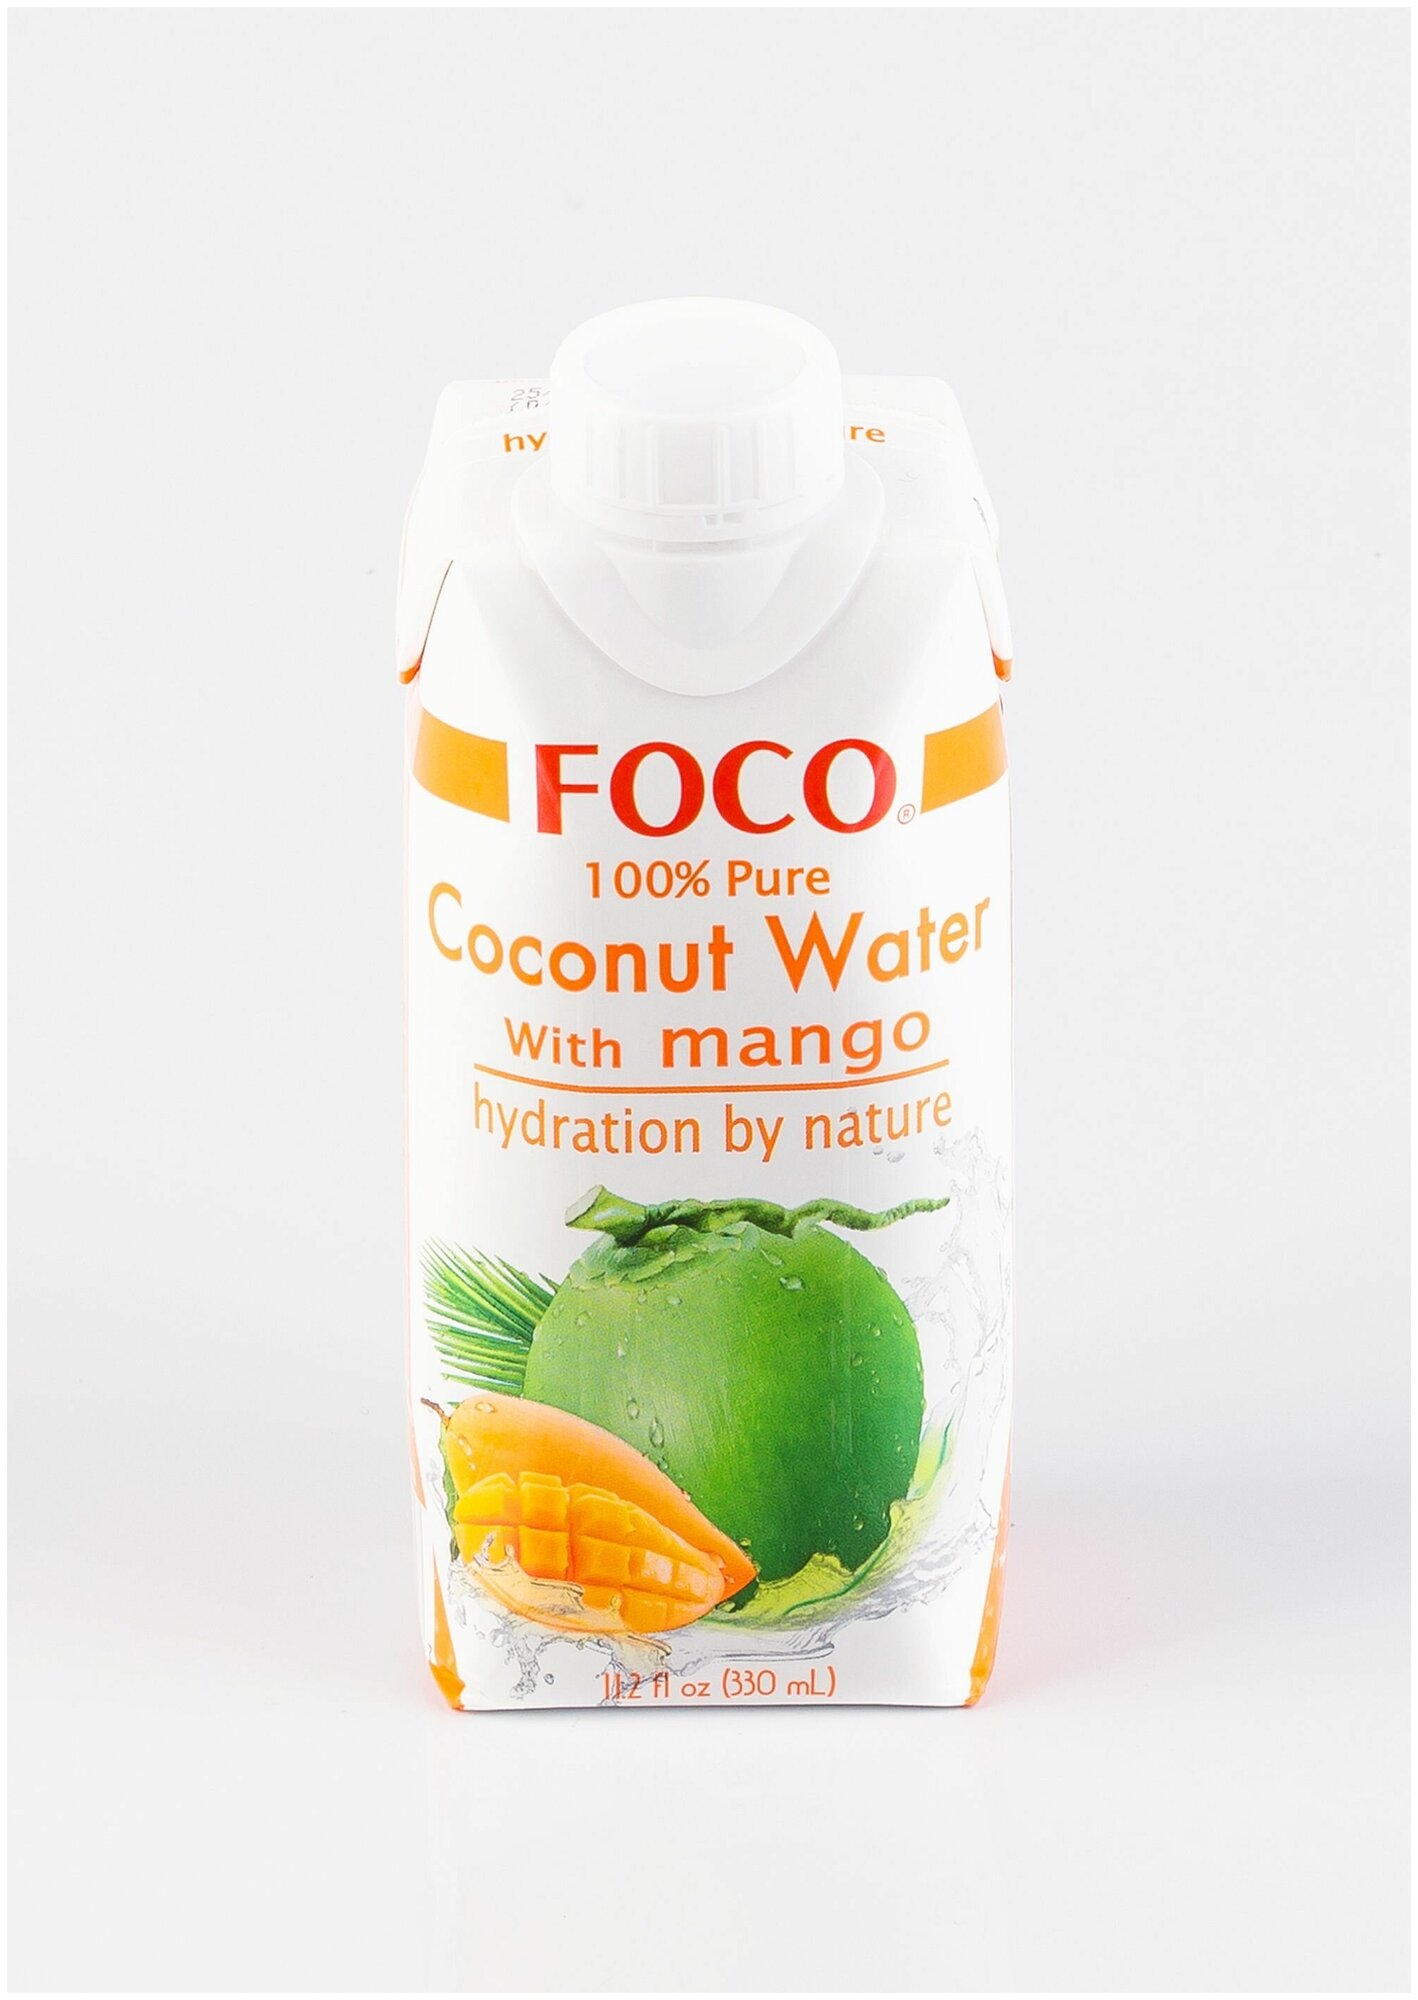 Кокосовая вода с манго "FOCO" 330 мл Tetra Pak 1шт - фотография № 14